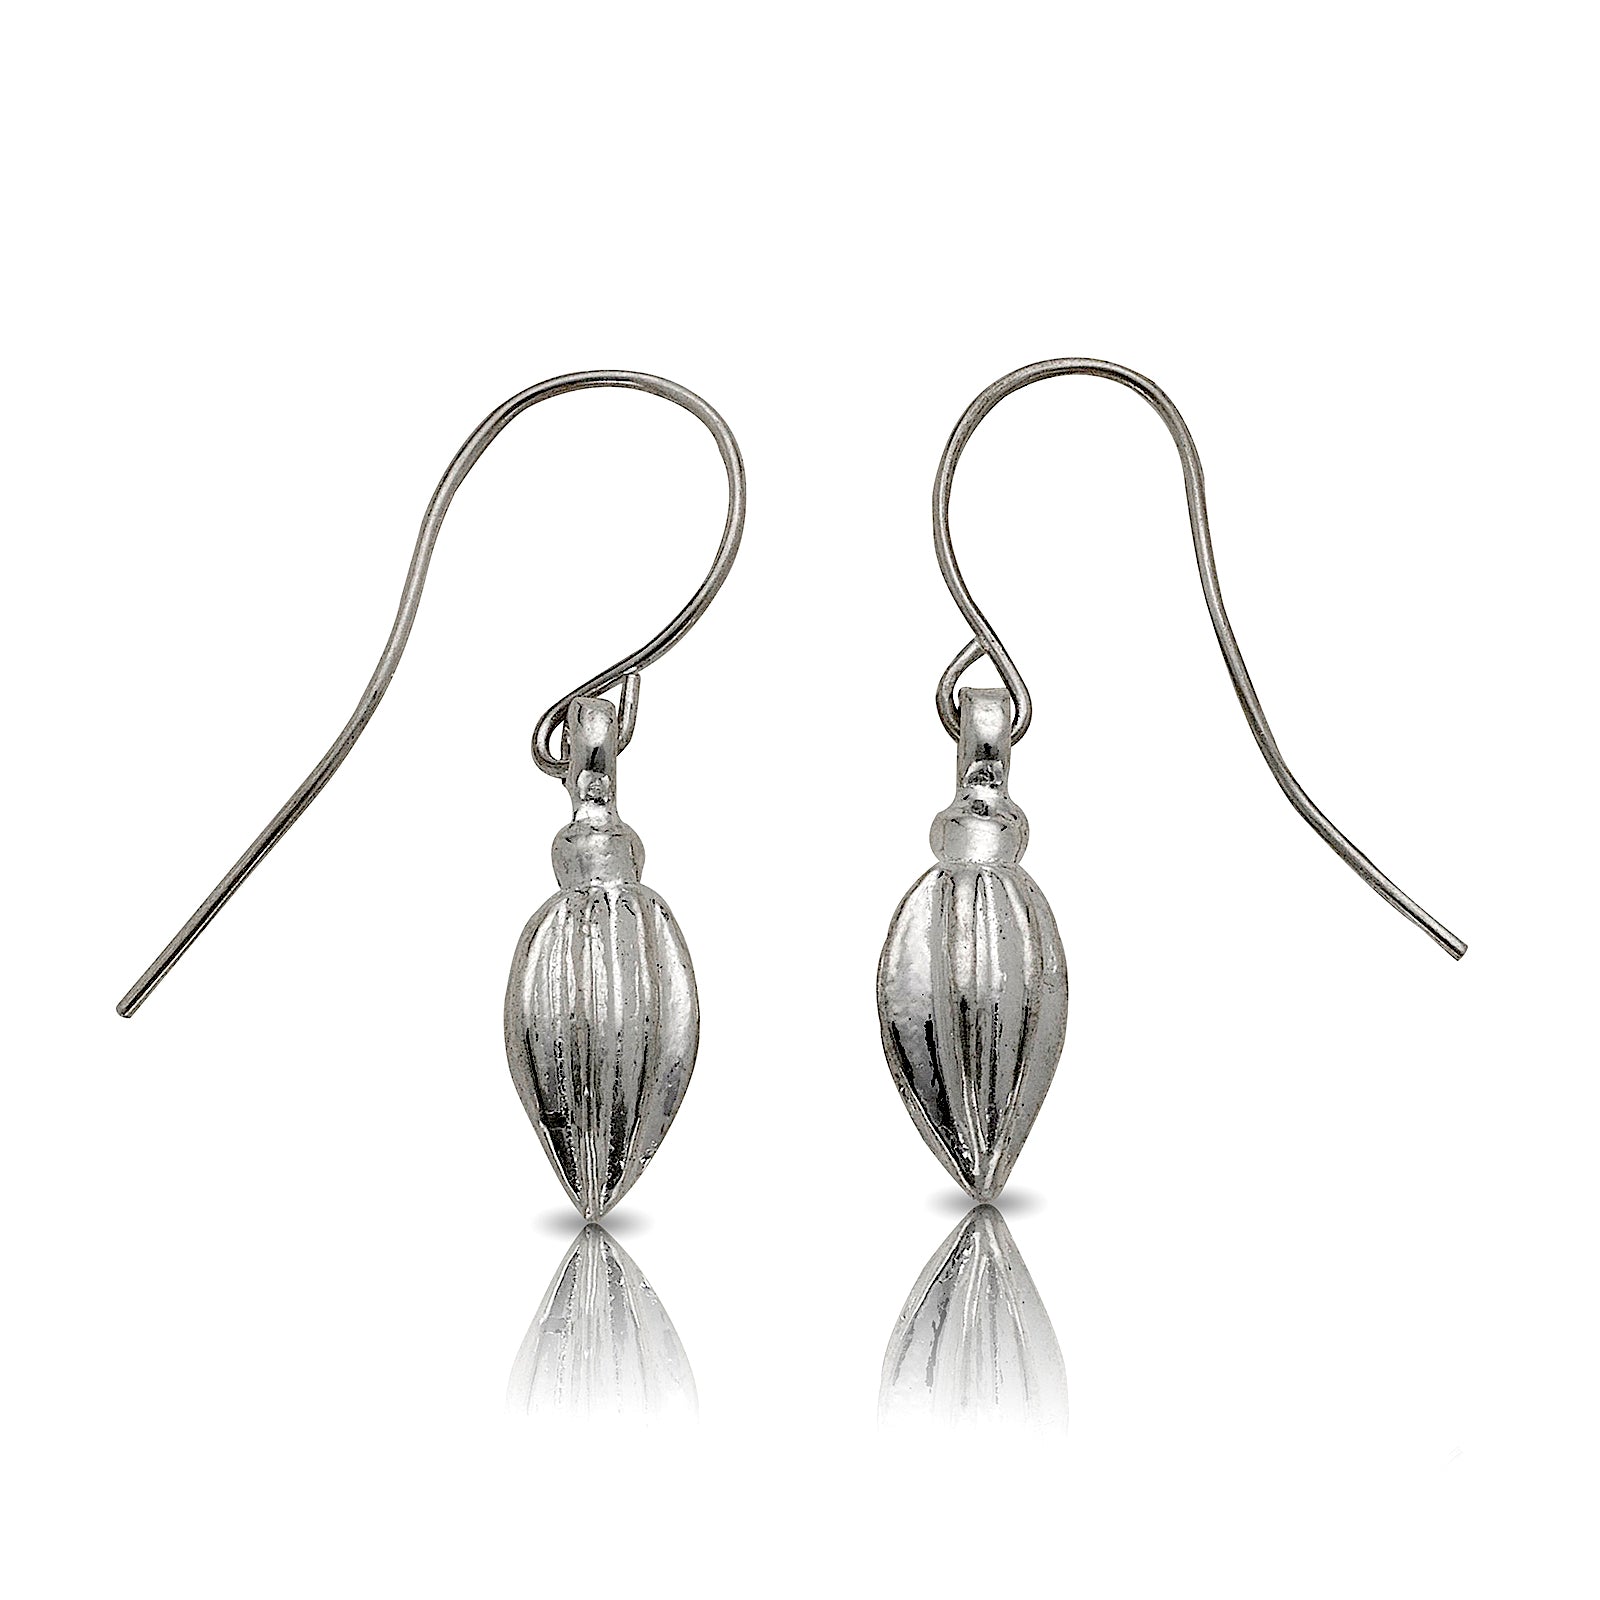 Cocoa pod earrings .925 Sterling Silver - Betterjewelry